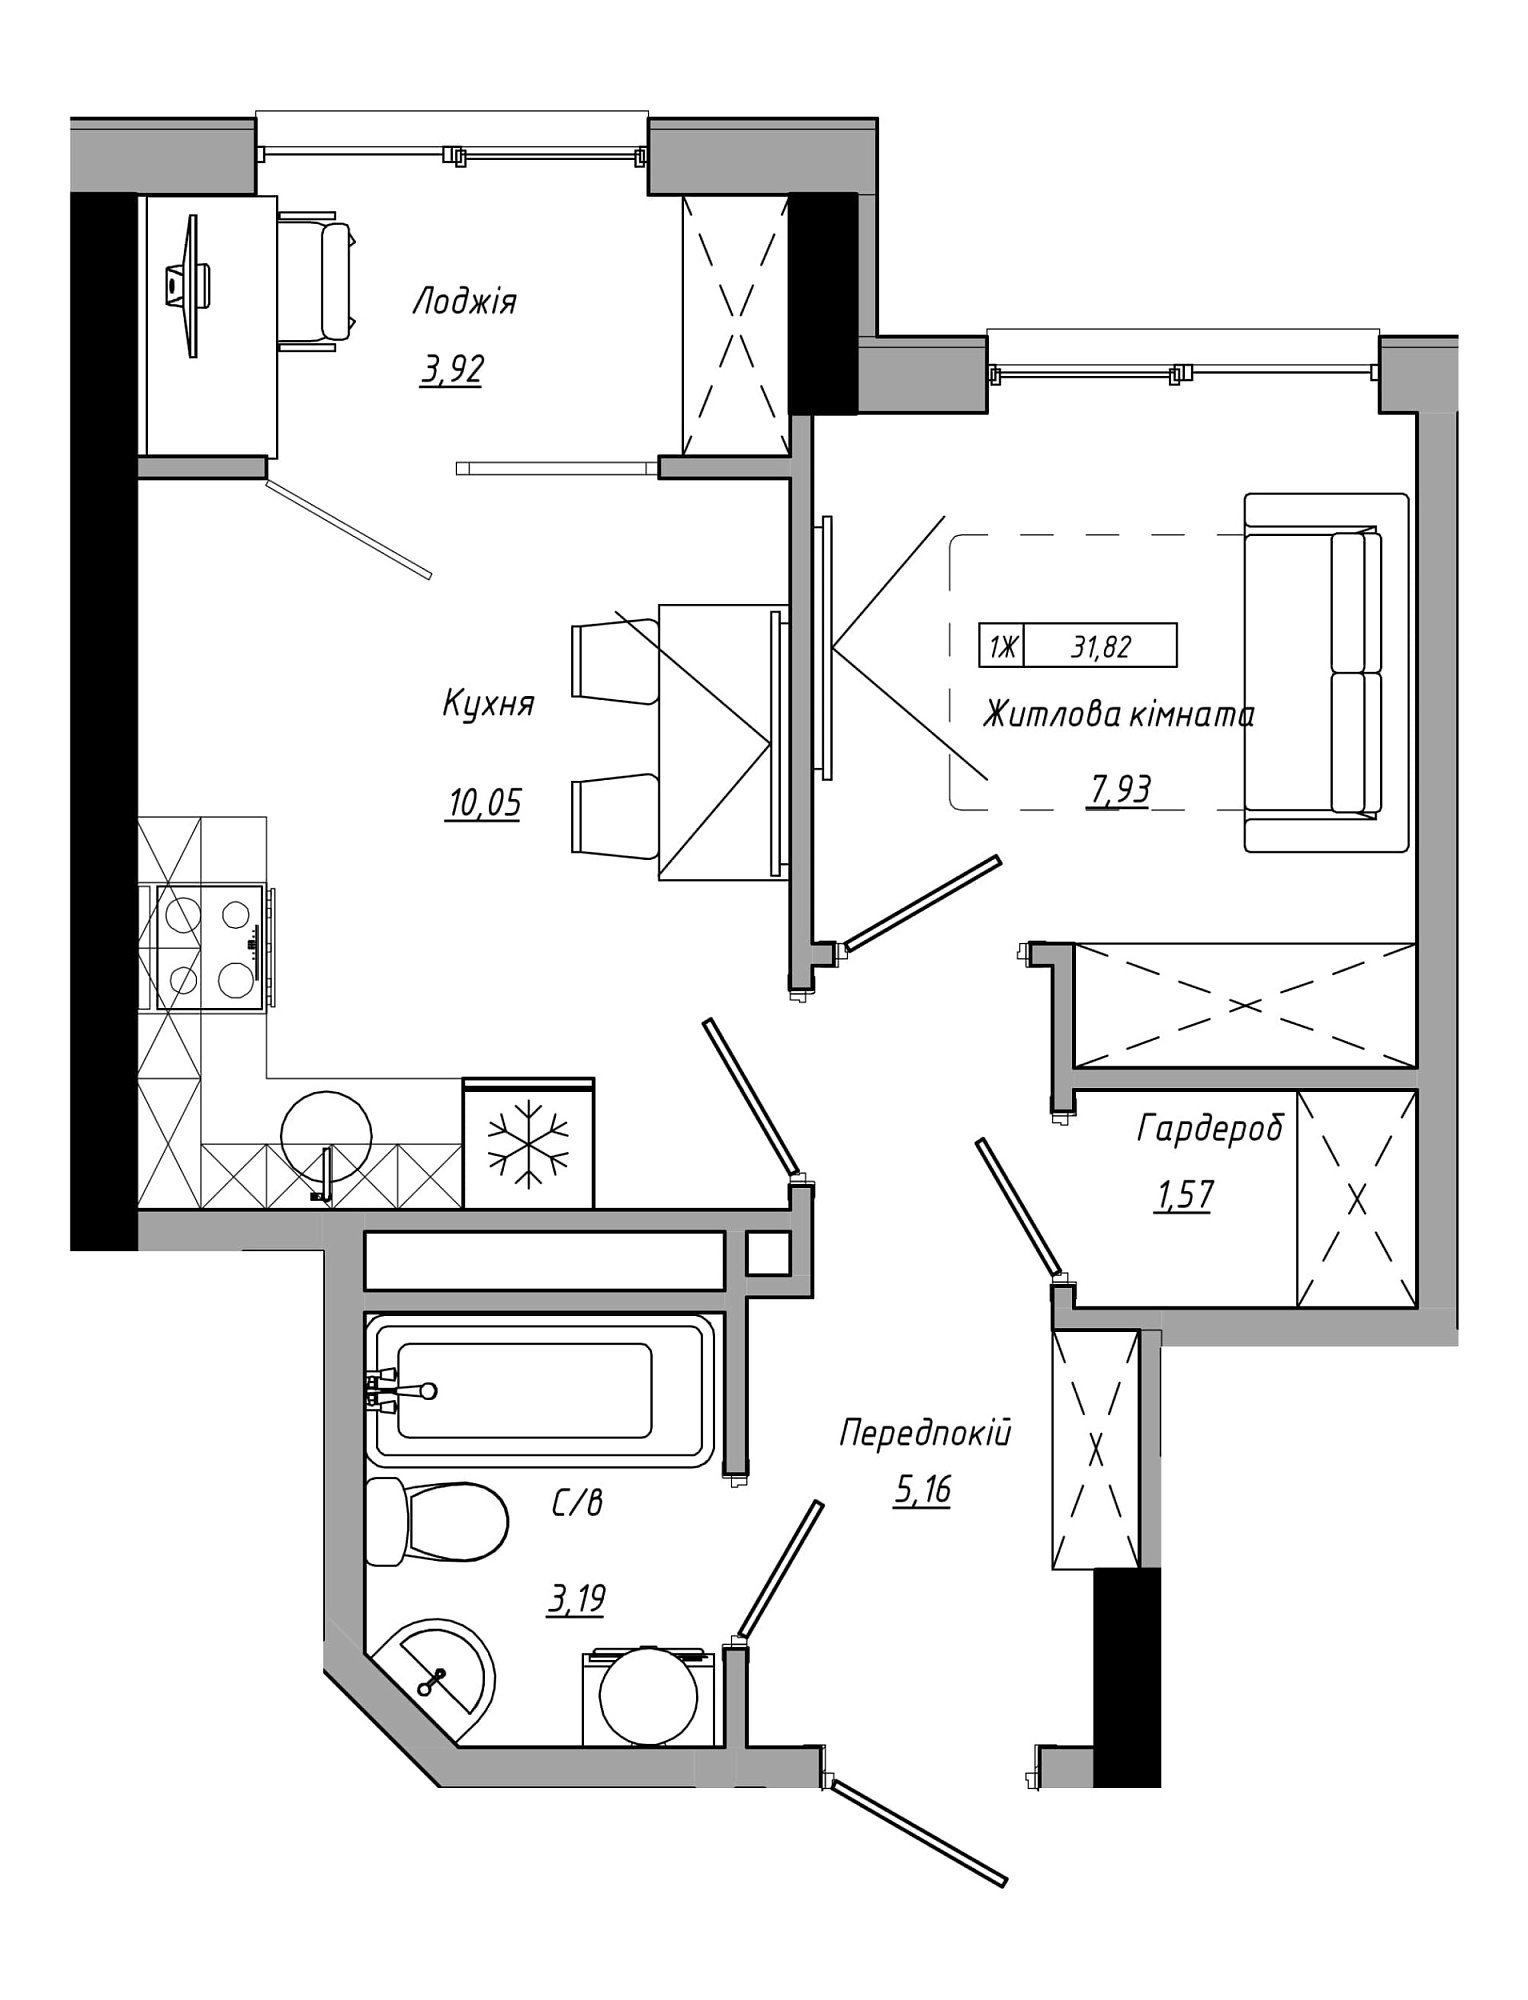 Планировка 1-к квартира площей 31.82м2, AB-21-08/00010.